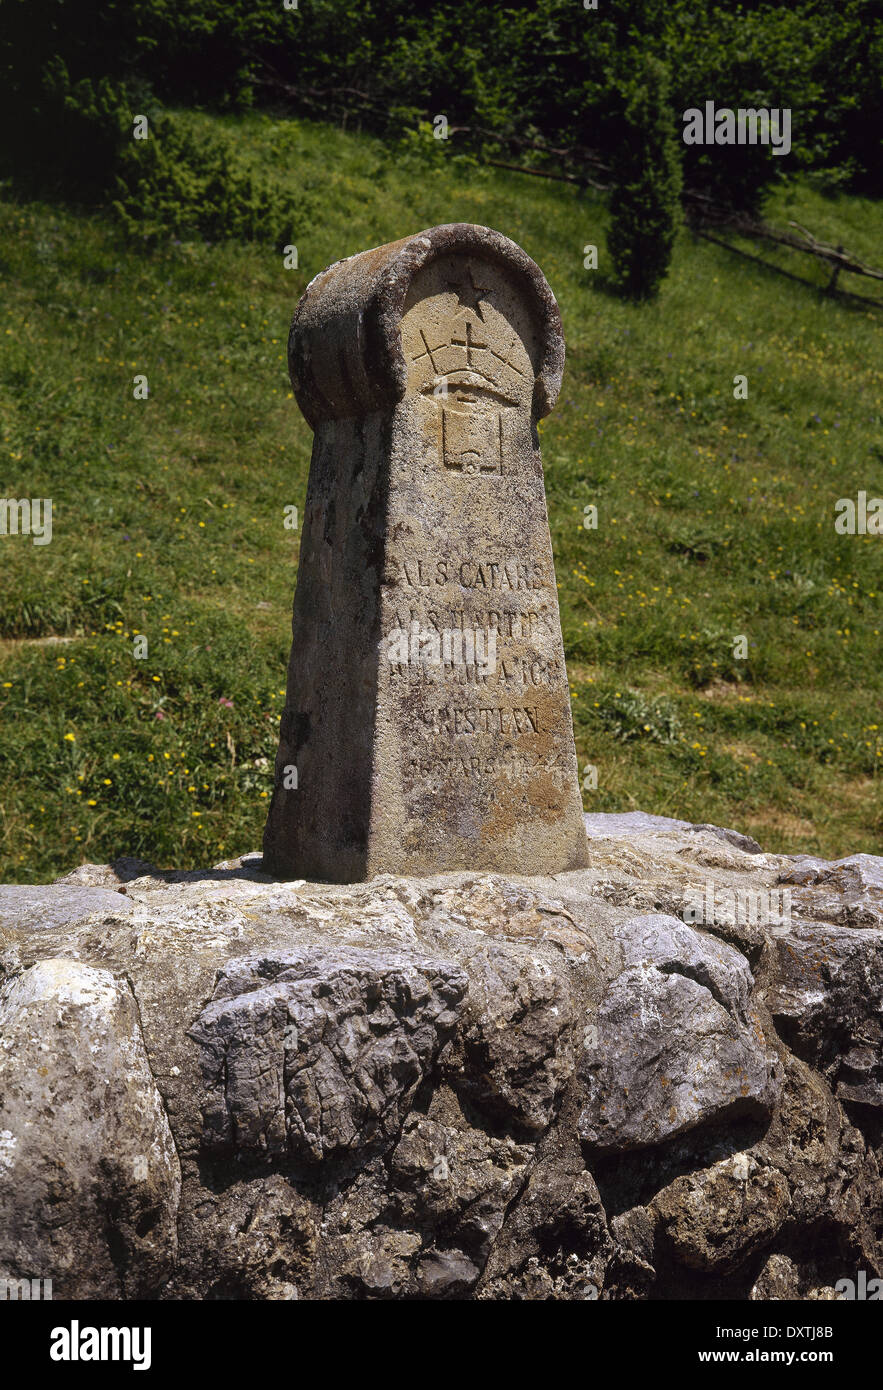 Frankreich. Mittelalterliche Stele, errichtet im Jahre 1960, in Erinnerung an die Katharer. Wiese verbrannt. Montségur. Katharer-Route. Stockfoto